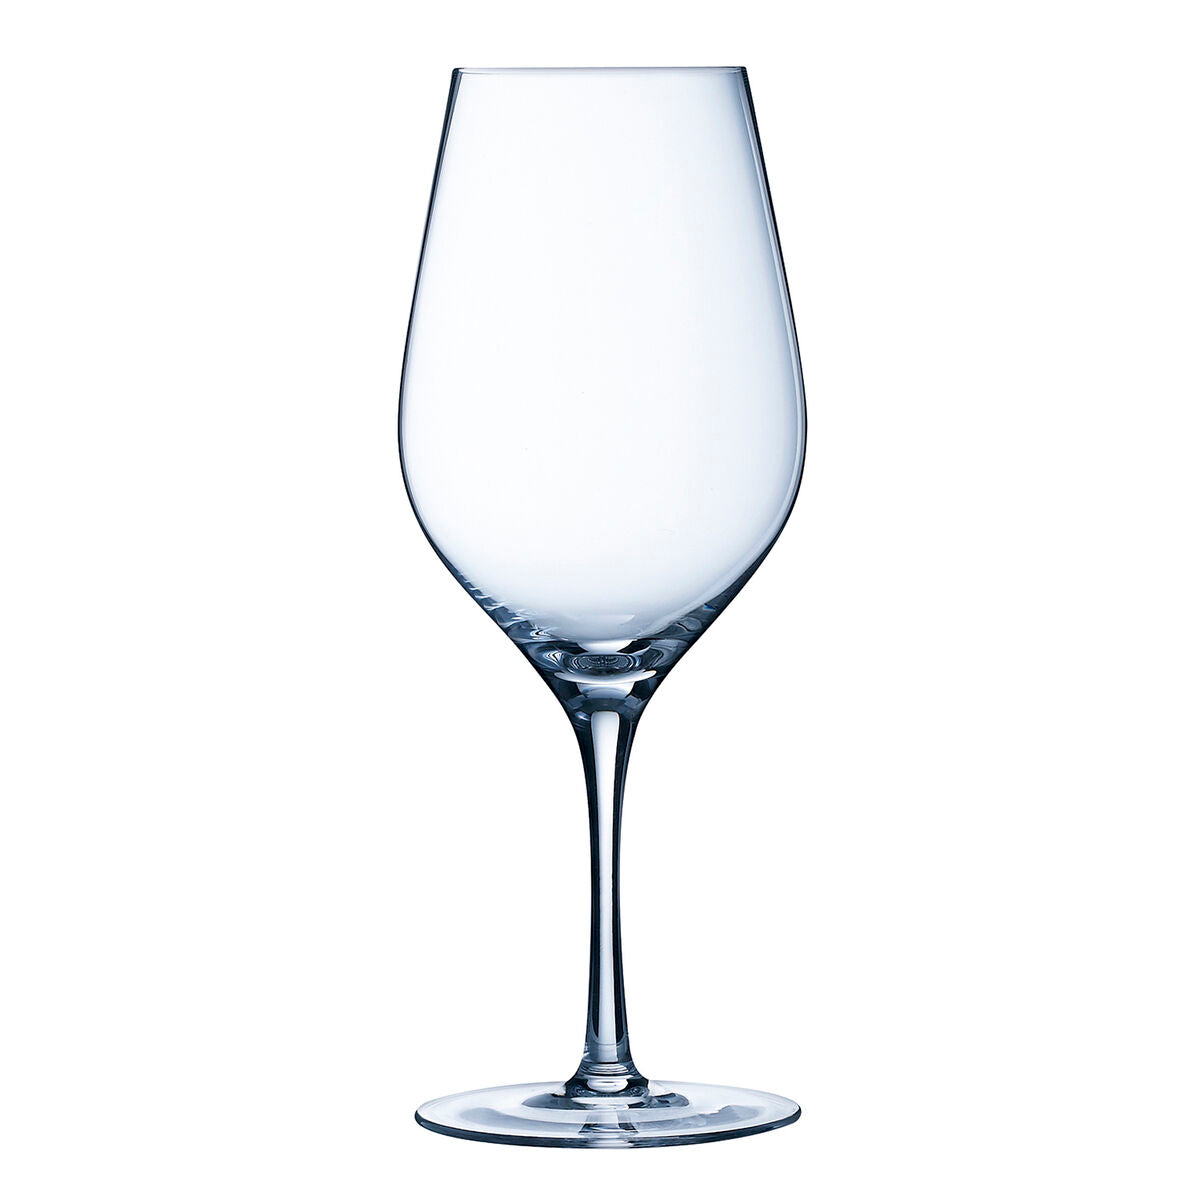 Gläsersatz Chef & Sommelier Cabernet Supreme Durchsichtig Glas 620 ml Wein (6 Stück)